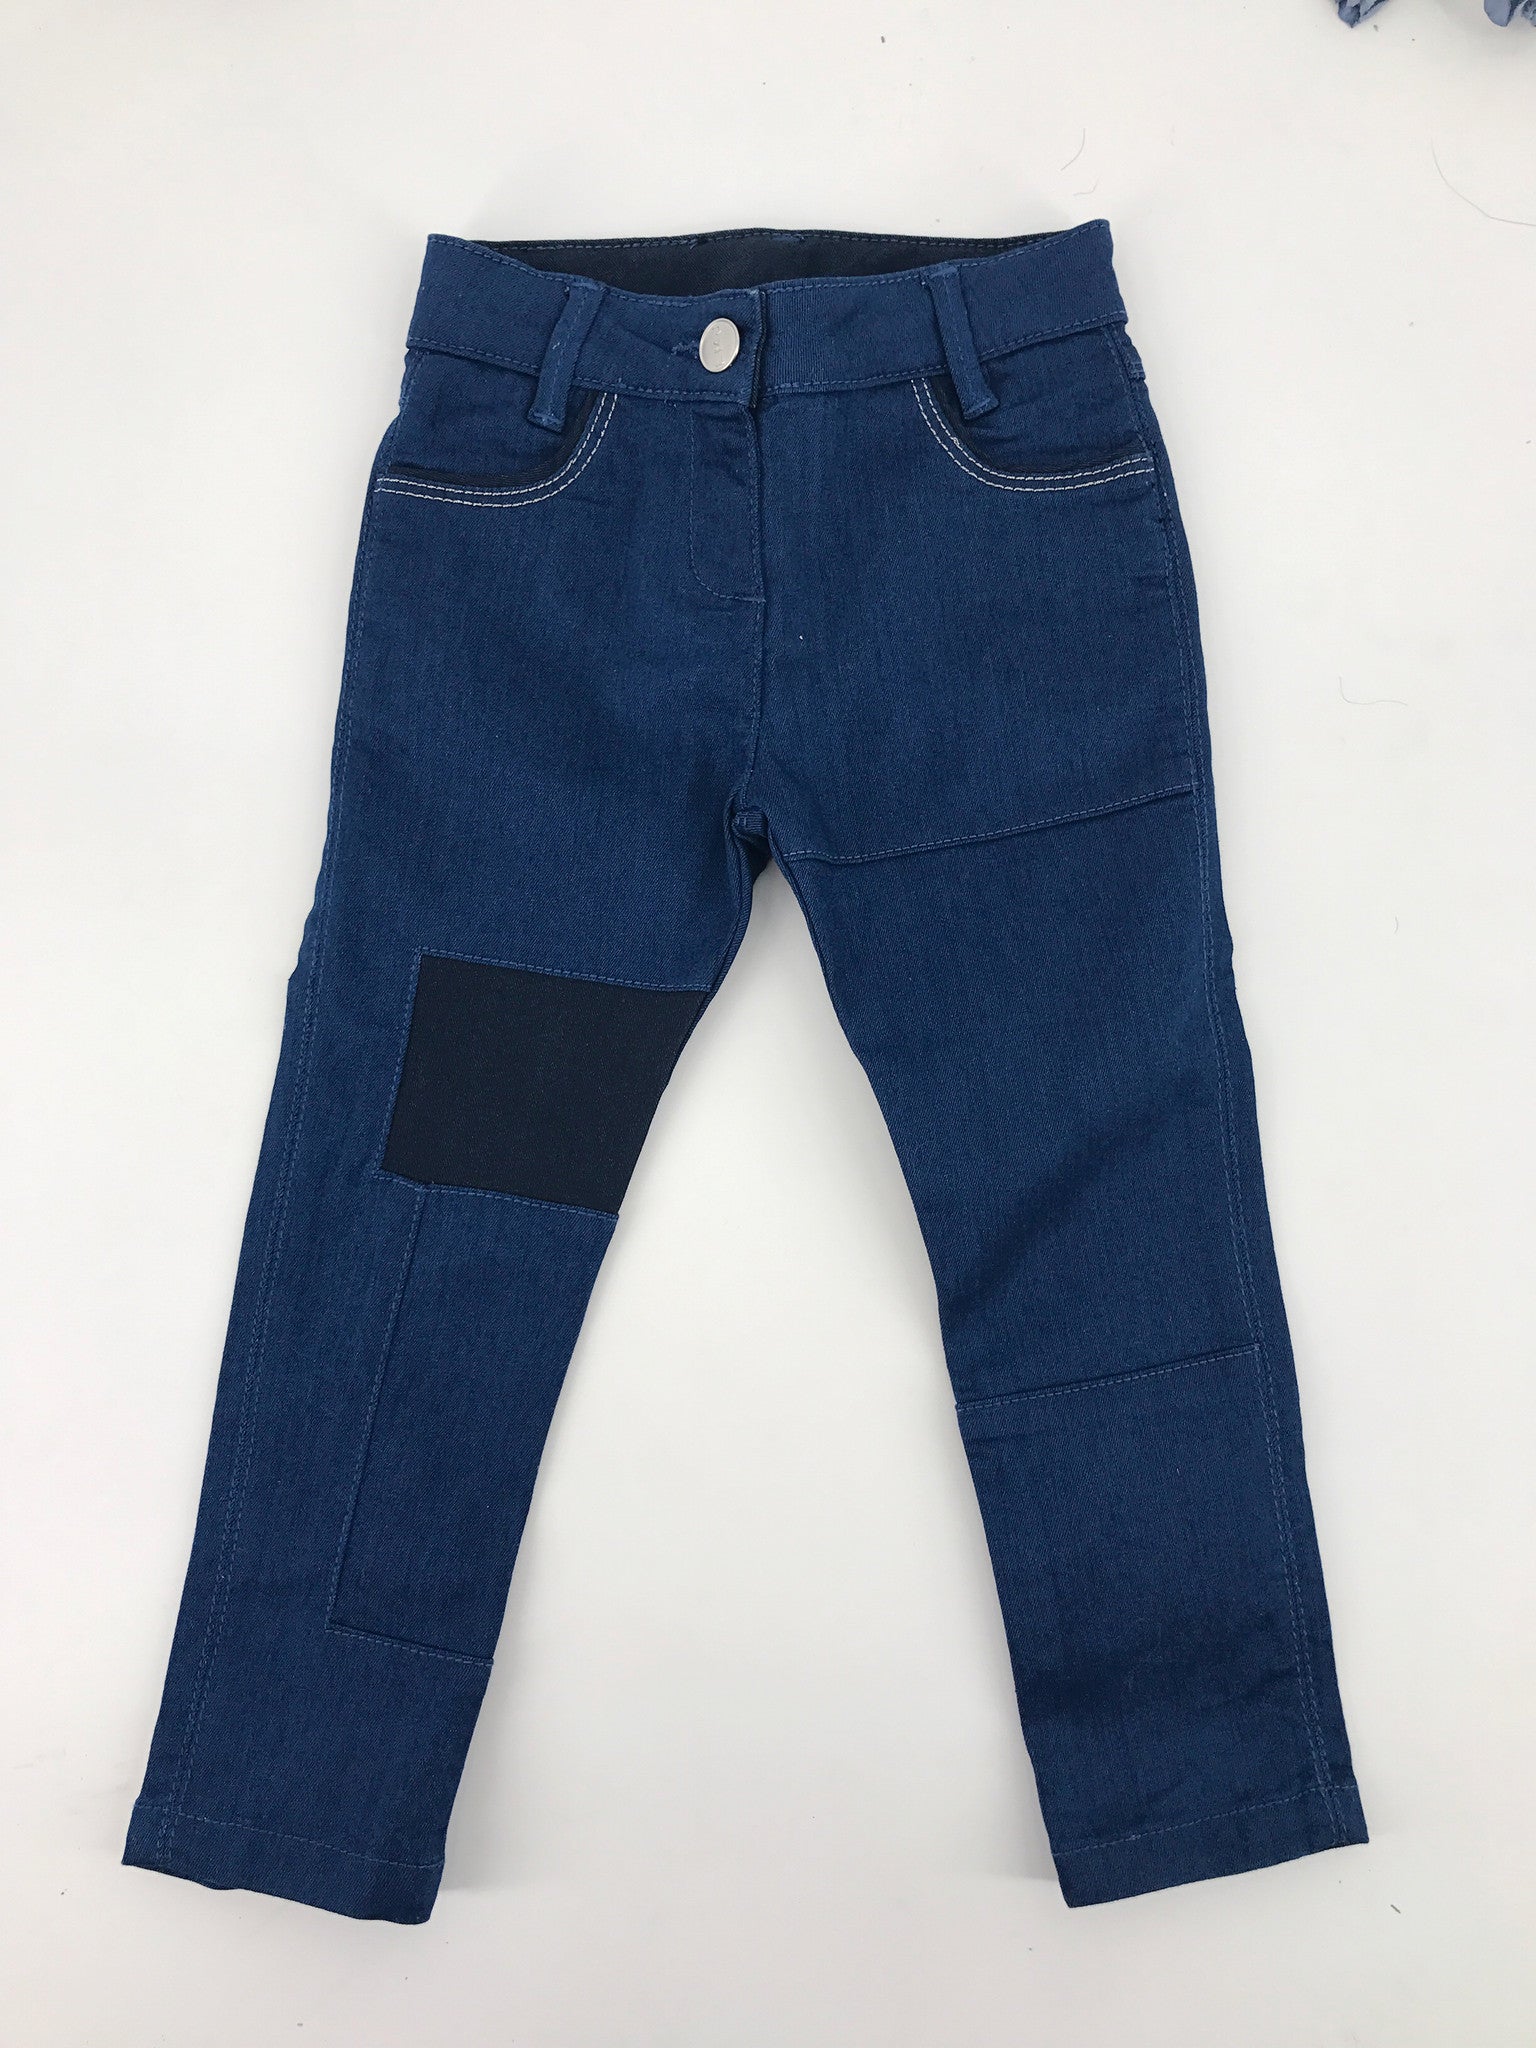 Boys Blue Denim Jeans - CÉMAROSE | Children's Fashion Store - 1